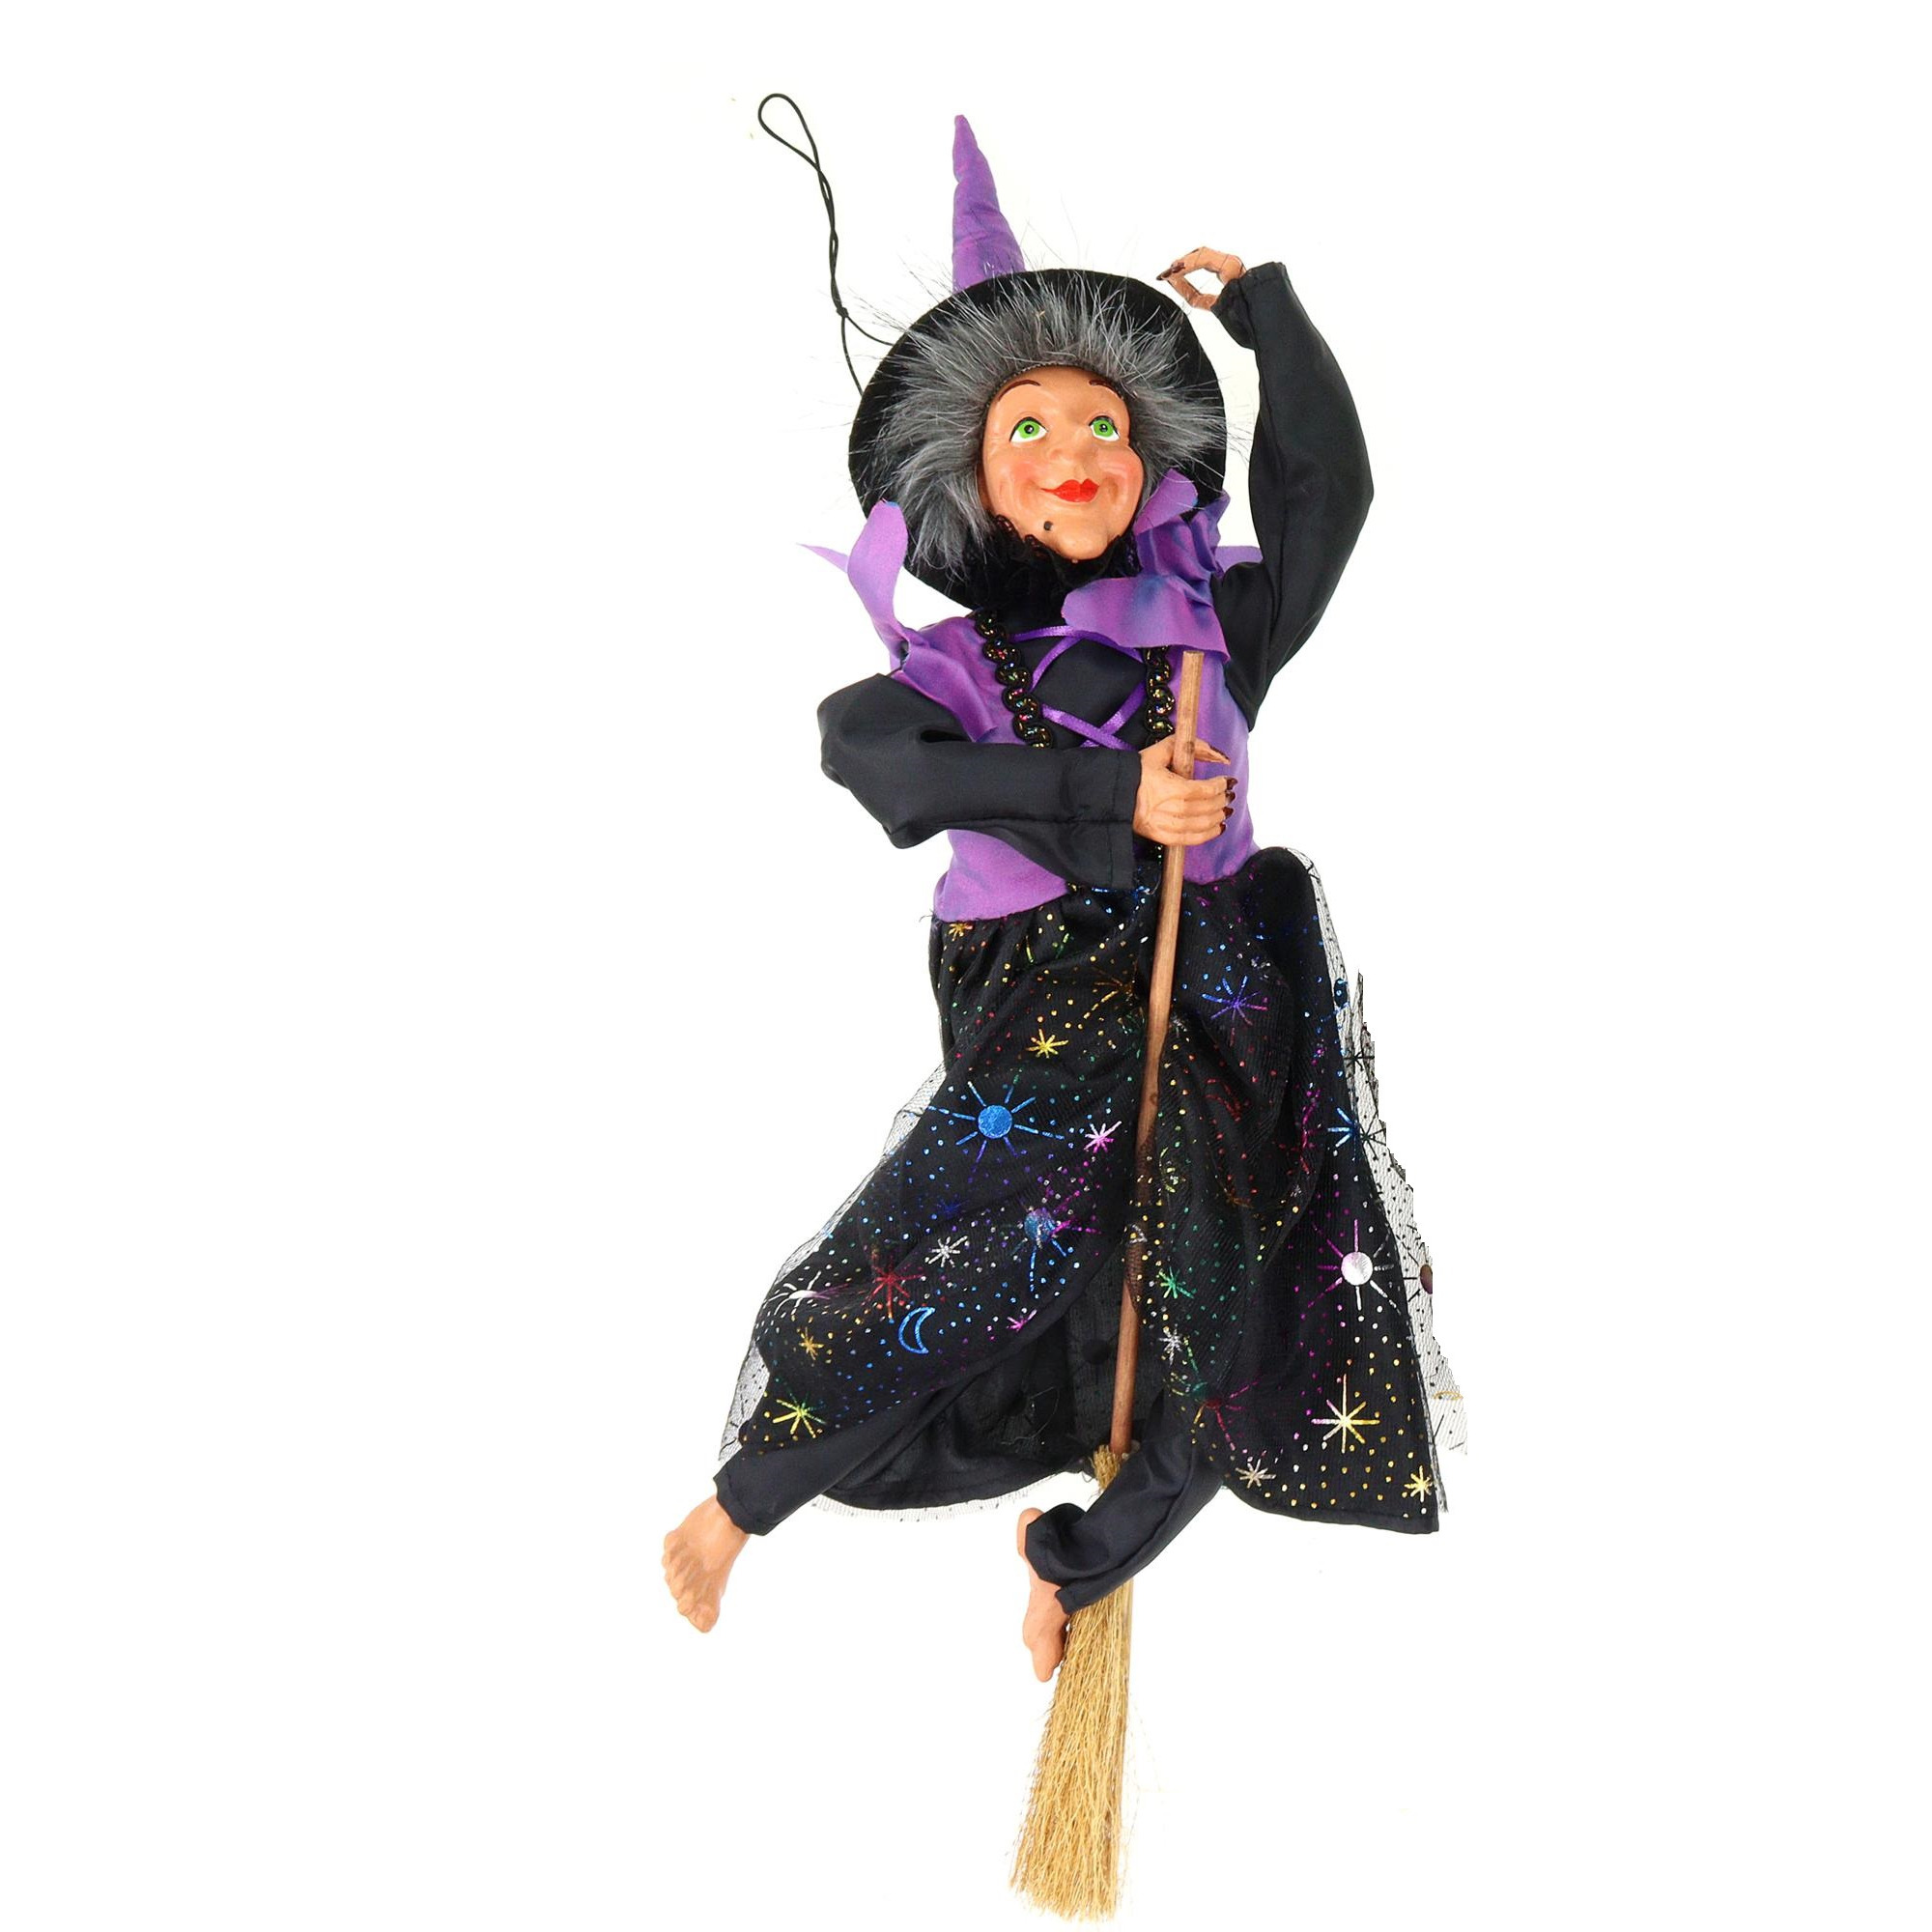 Creation decoratie heksen pop vliegend op bezem 40 cm zwart-paars Halloween versiering